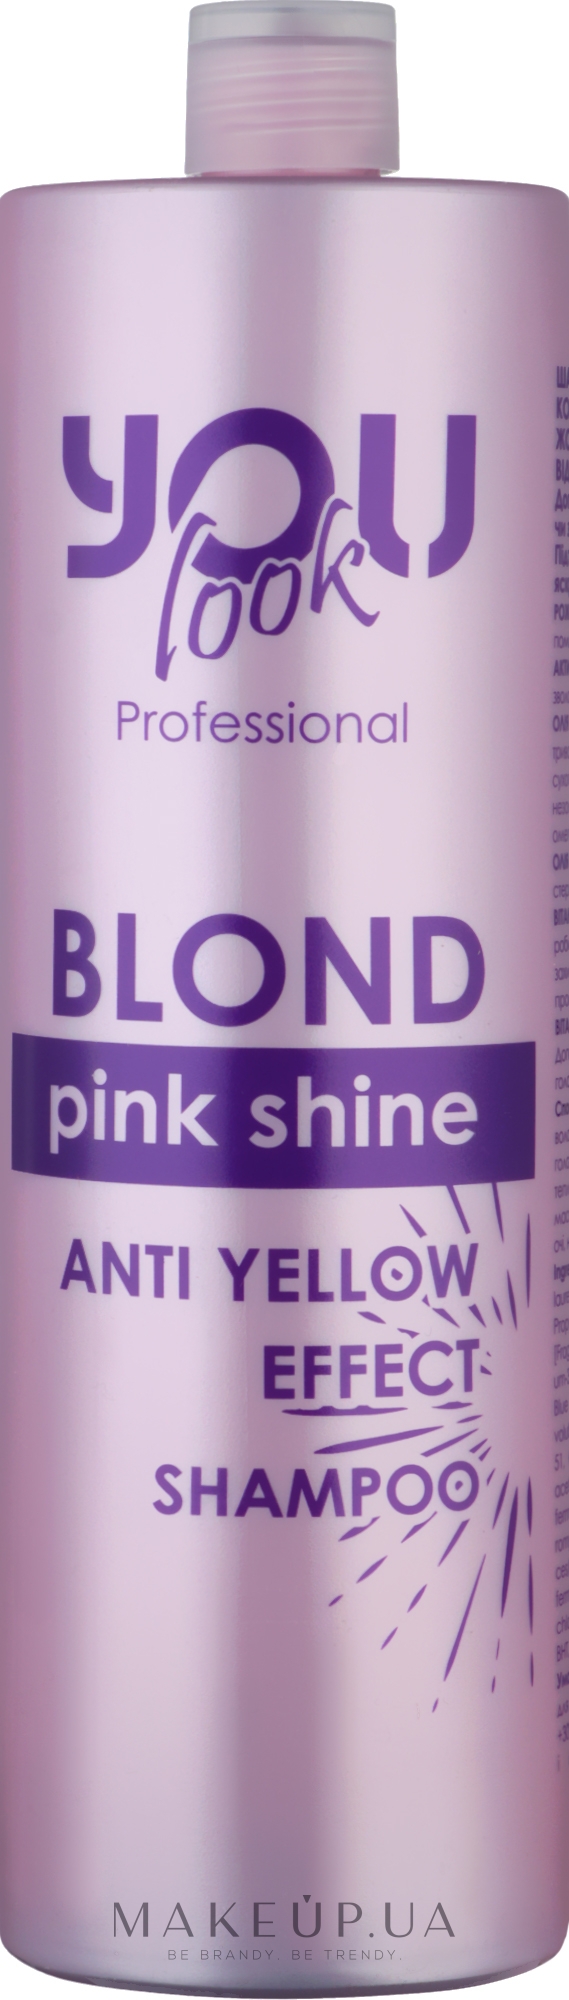 Шампунь для збереження кольору й нейтралізації жовто-помаранчевих відтінків - You look Professional Pink Shine Shampoo — фото 1000ml